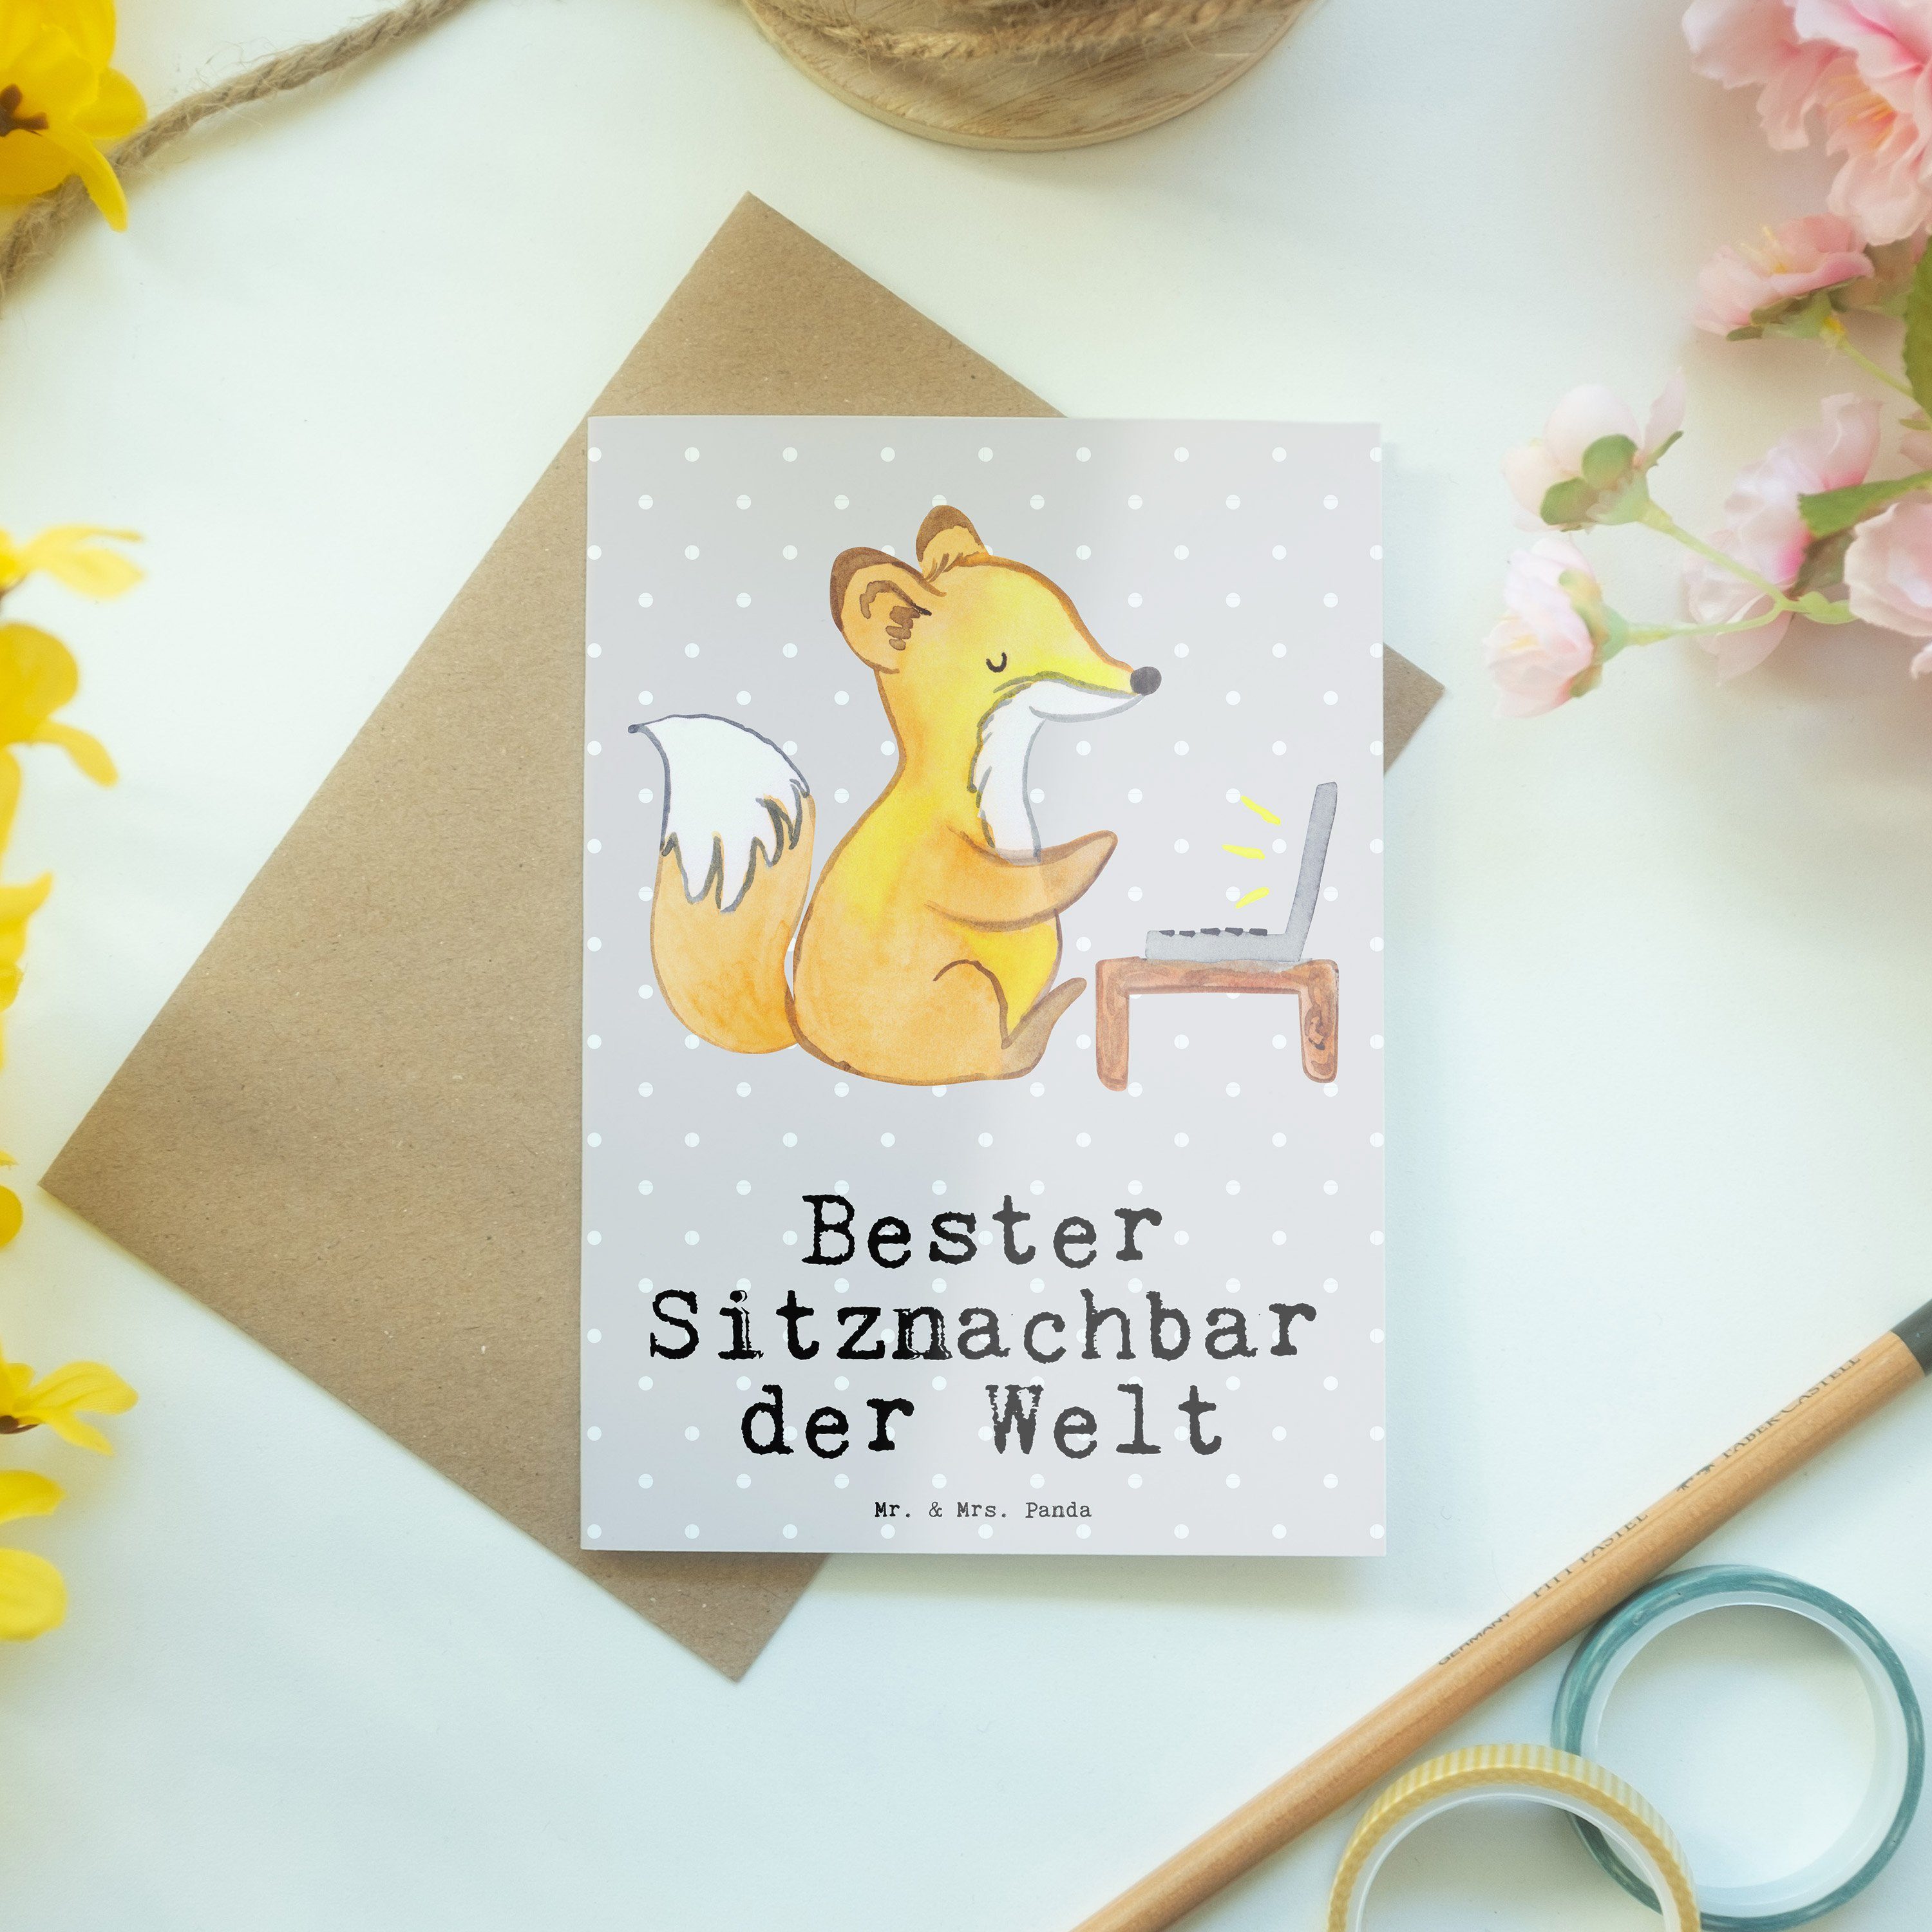 Mr. & Mrs. Mit Welt der Pastell Grau - Bester Fuchs Geschenk, Panda Uni, Sitznachbar - Grußkarte